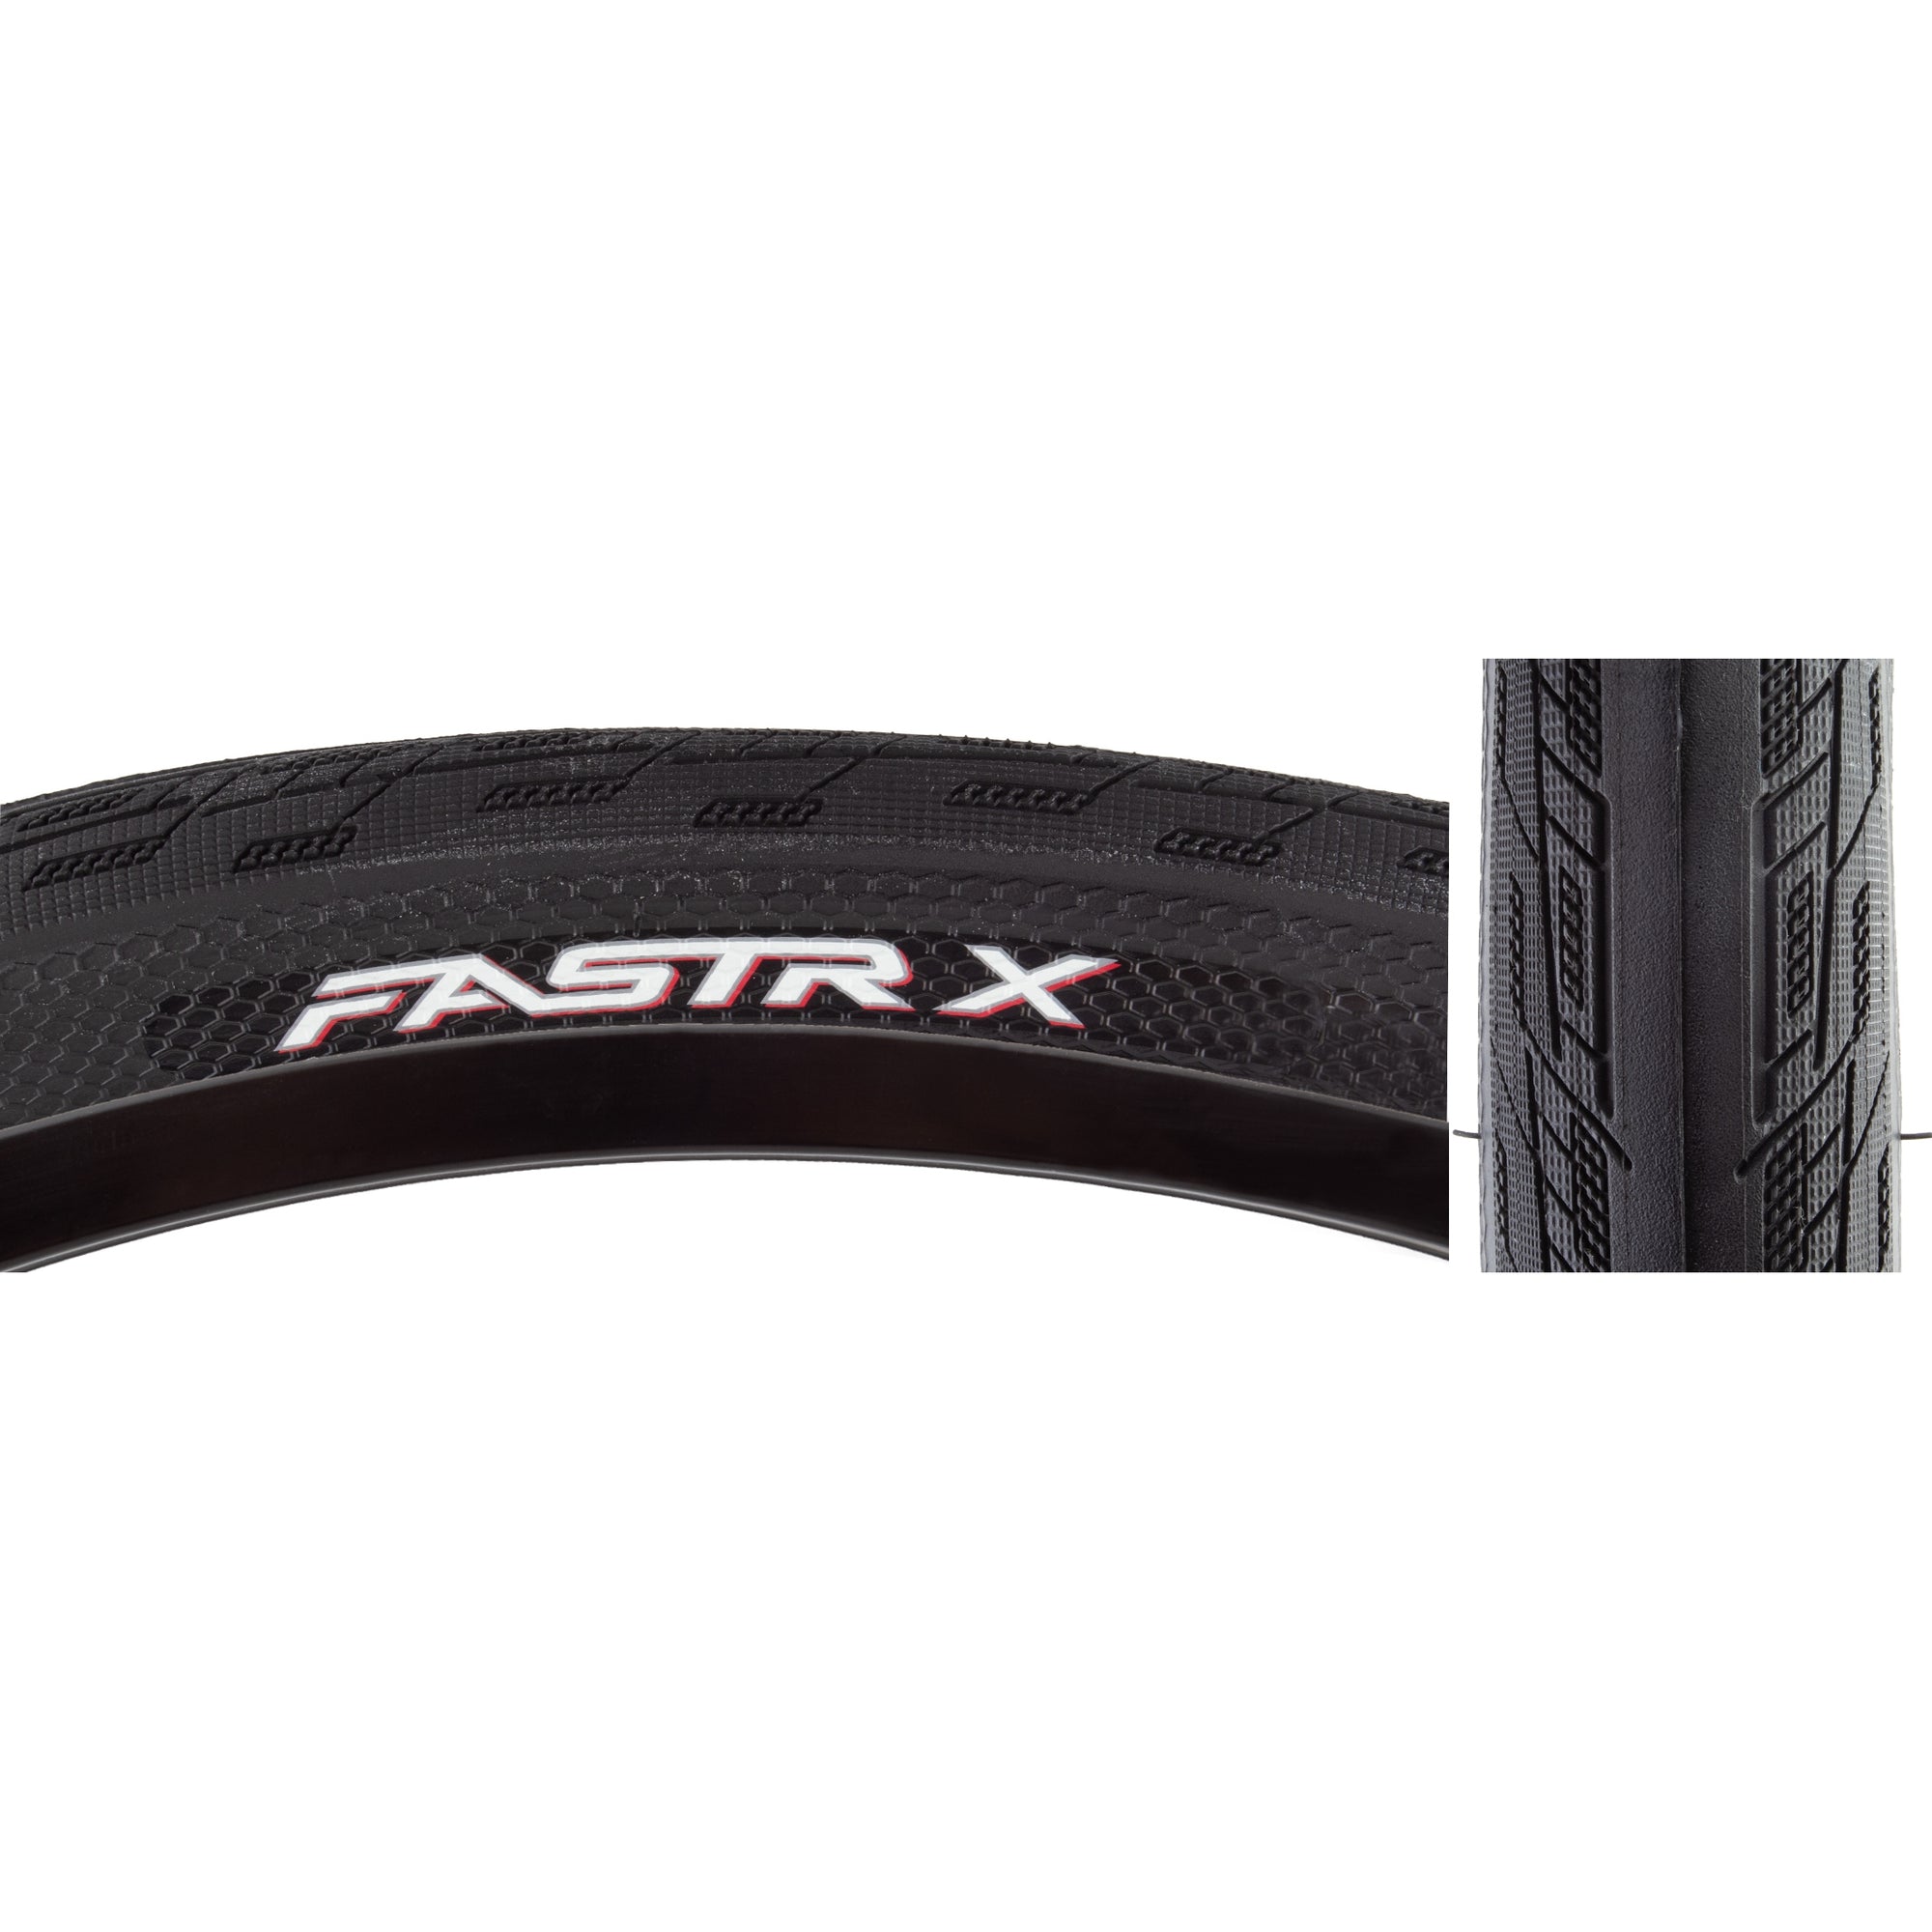 24x1.60 Tioga Fastr-X BMX Tire - Black